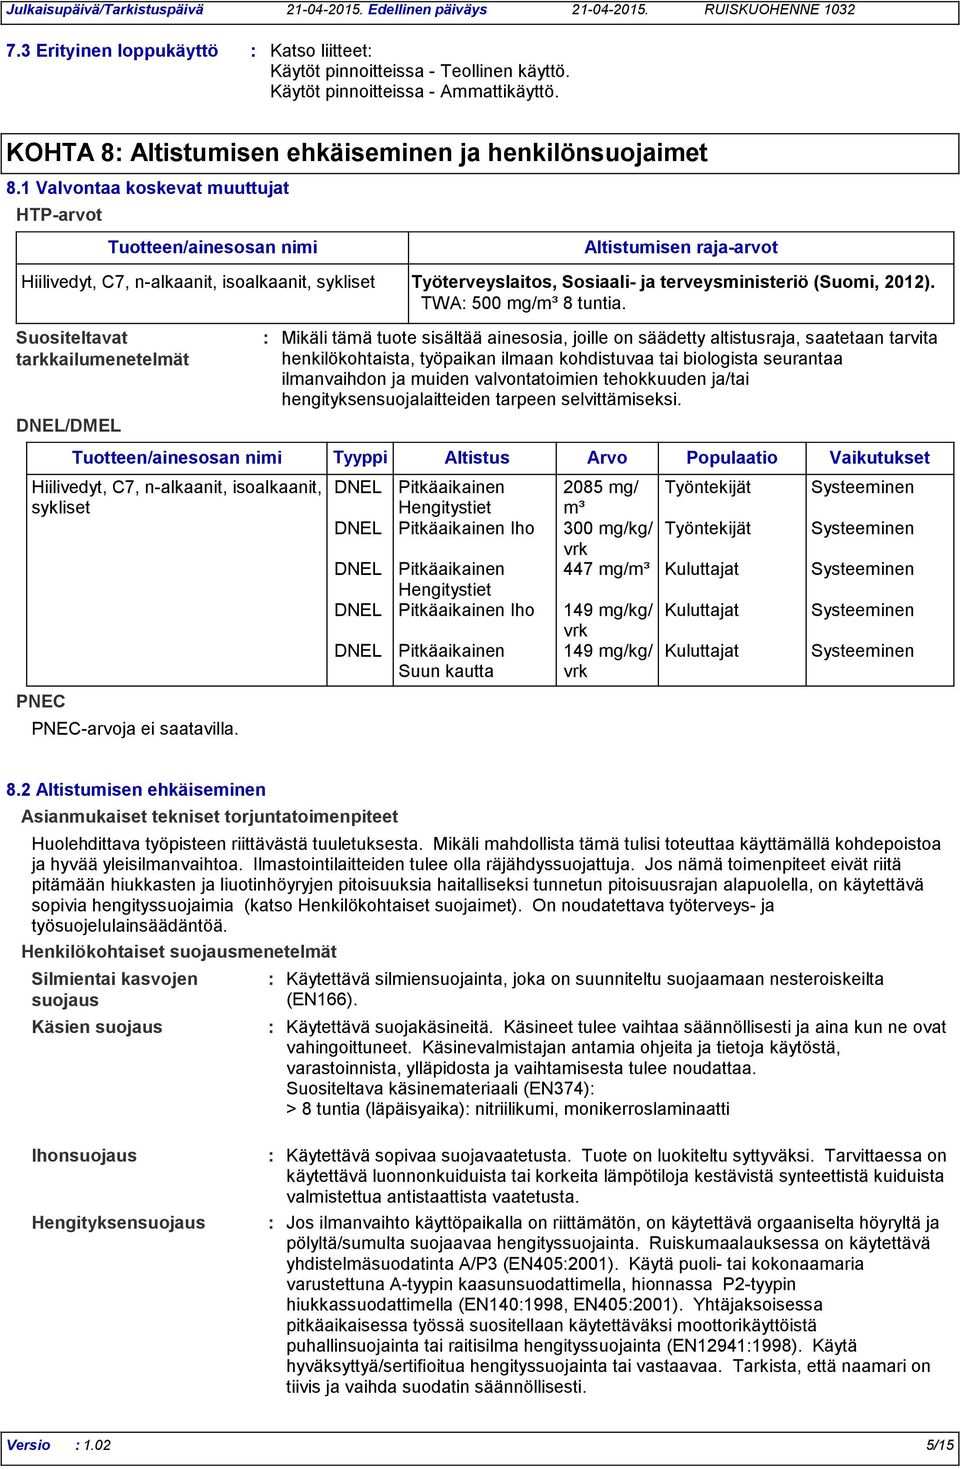 Sosiaali- ja terveysministeriö (Suomi, 2012). TWA 500 mg/m³ 8 tuntia.